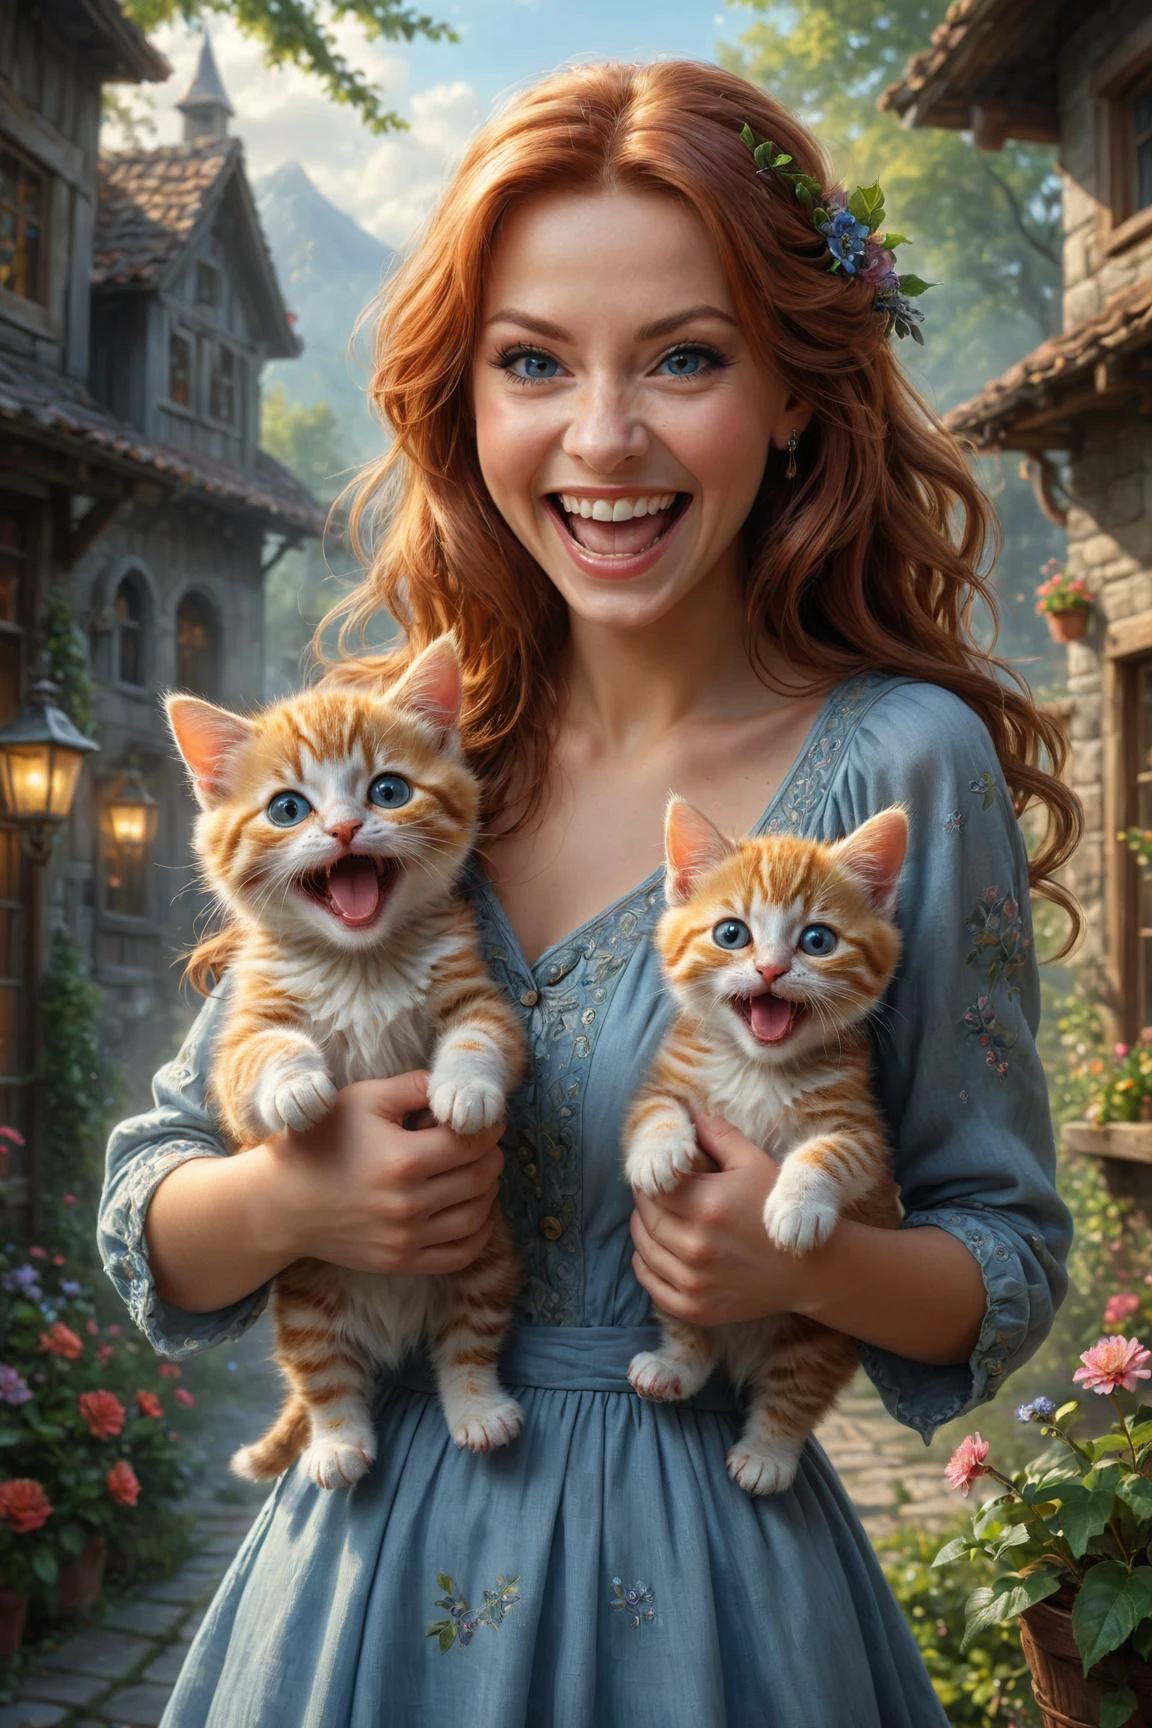 por (((Lori Earley) y Brian Mashburn ) y Mark Keathley ) y Evgeny Lushpin, fotografía hiperdetallada de una linda mujer feliz sosteniendo dos lindos gatitos mientras se ríe maniáticamente, gatitos con doble empuñadura 